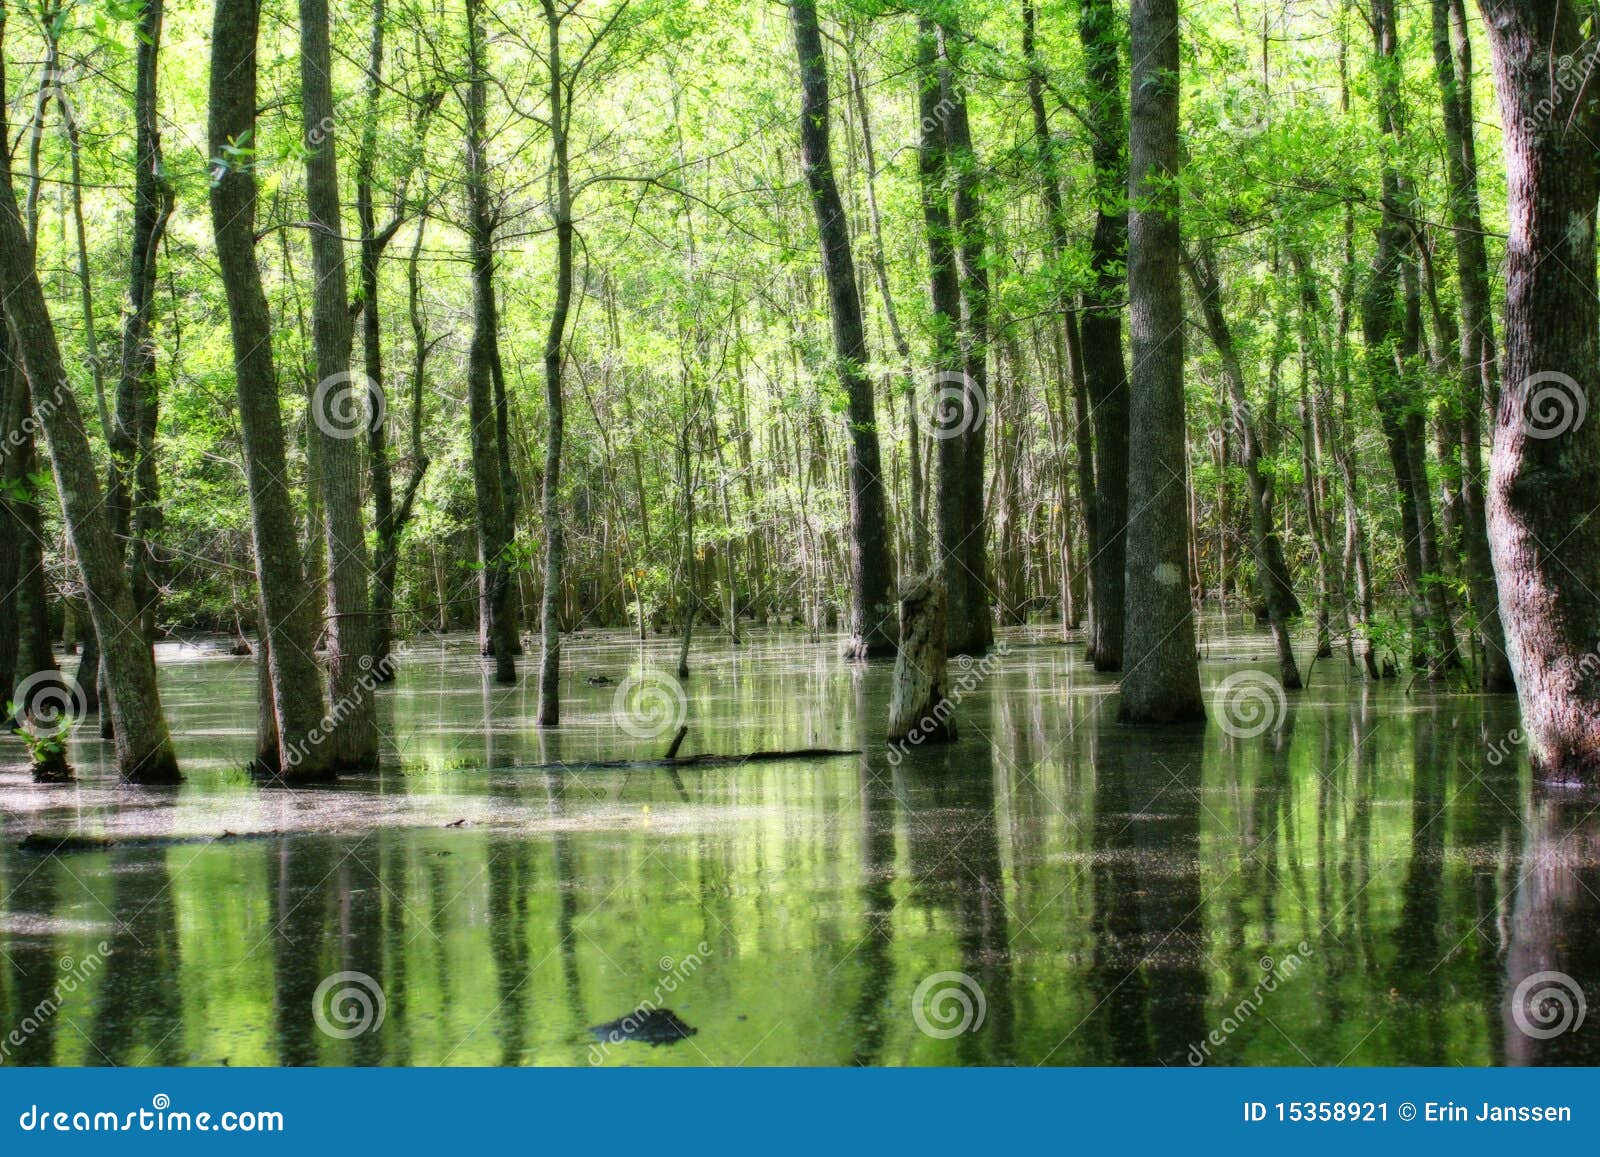 green swamp land